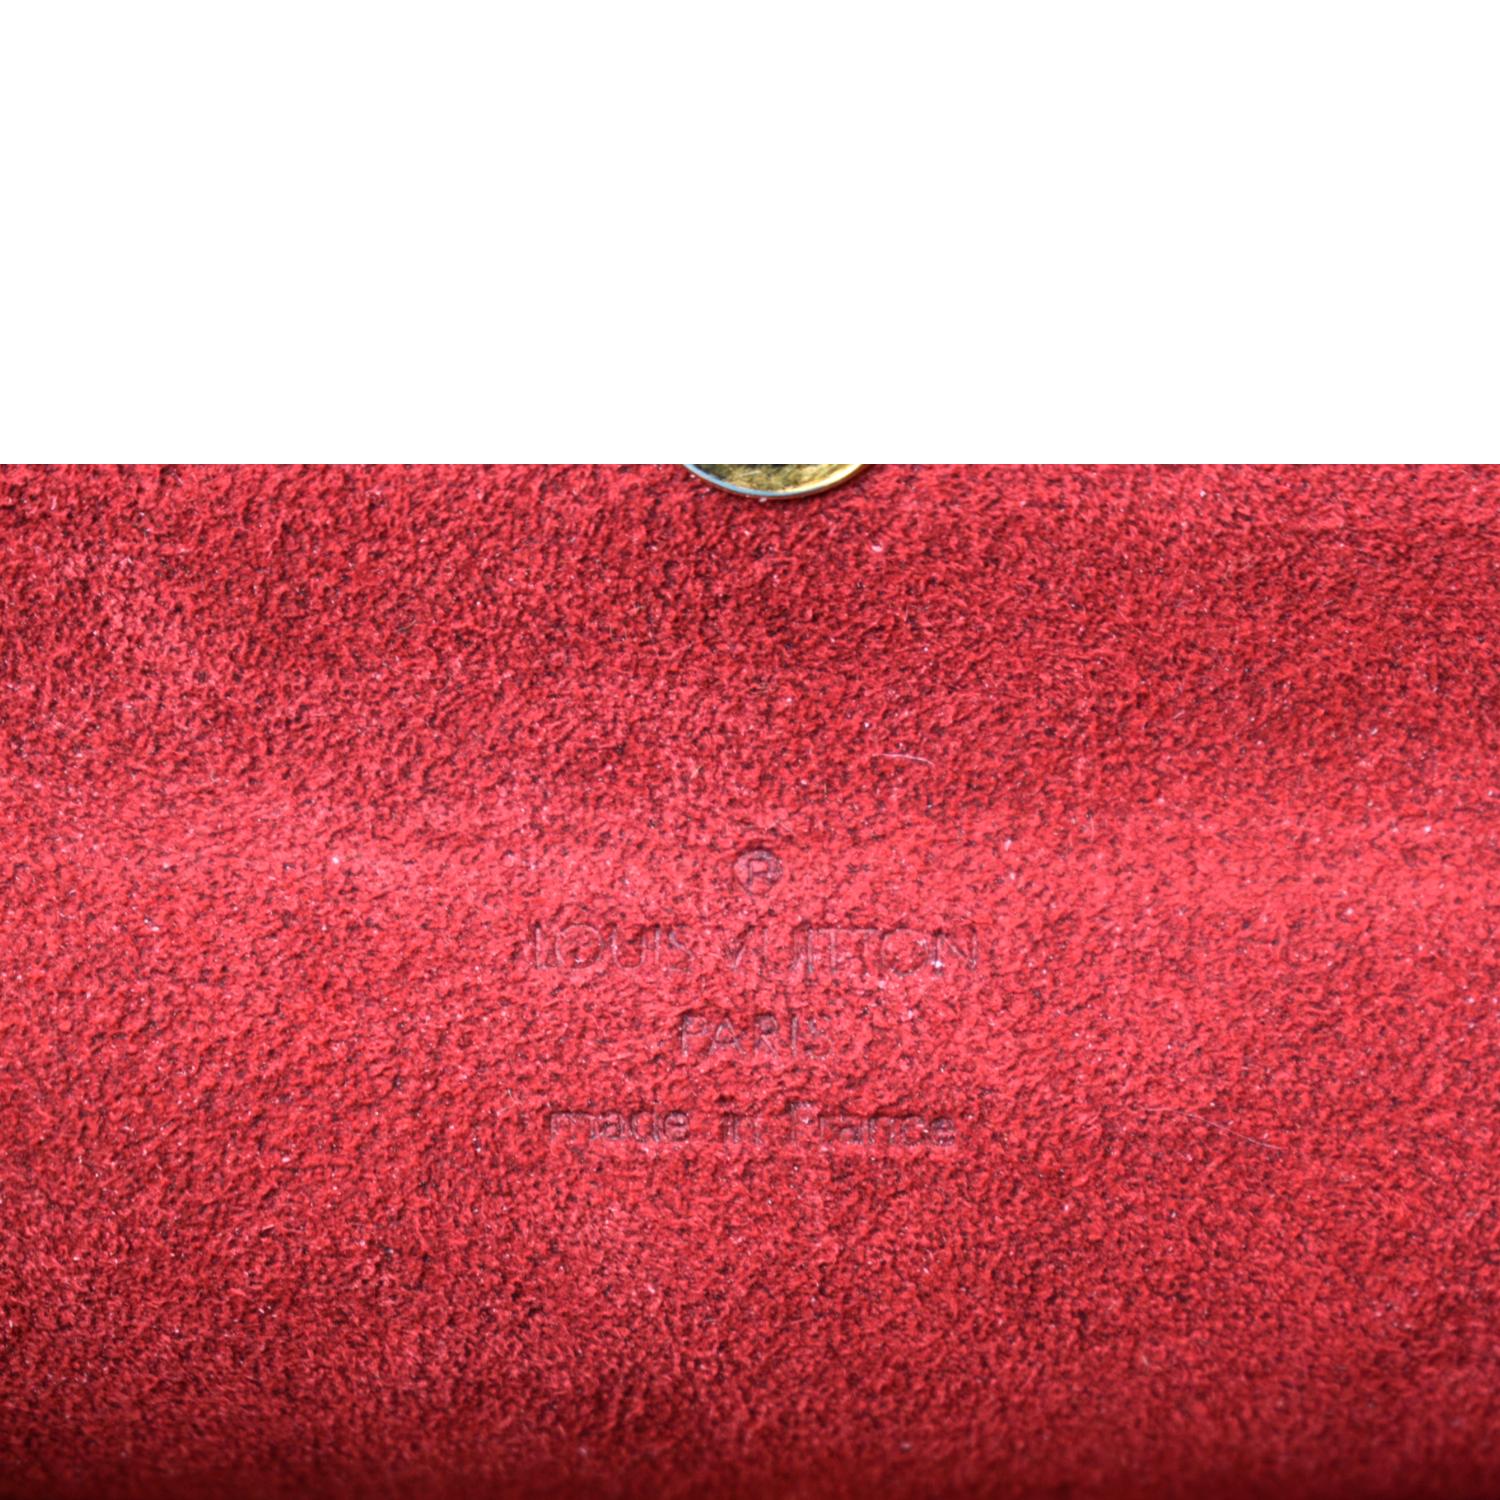 Recital cloth handbag Louis Vuitton Brown in Cloth - 38691287